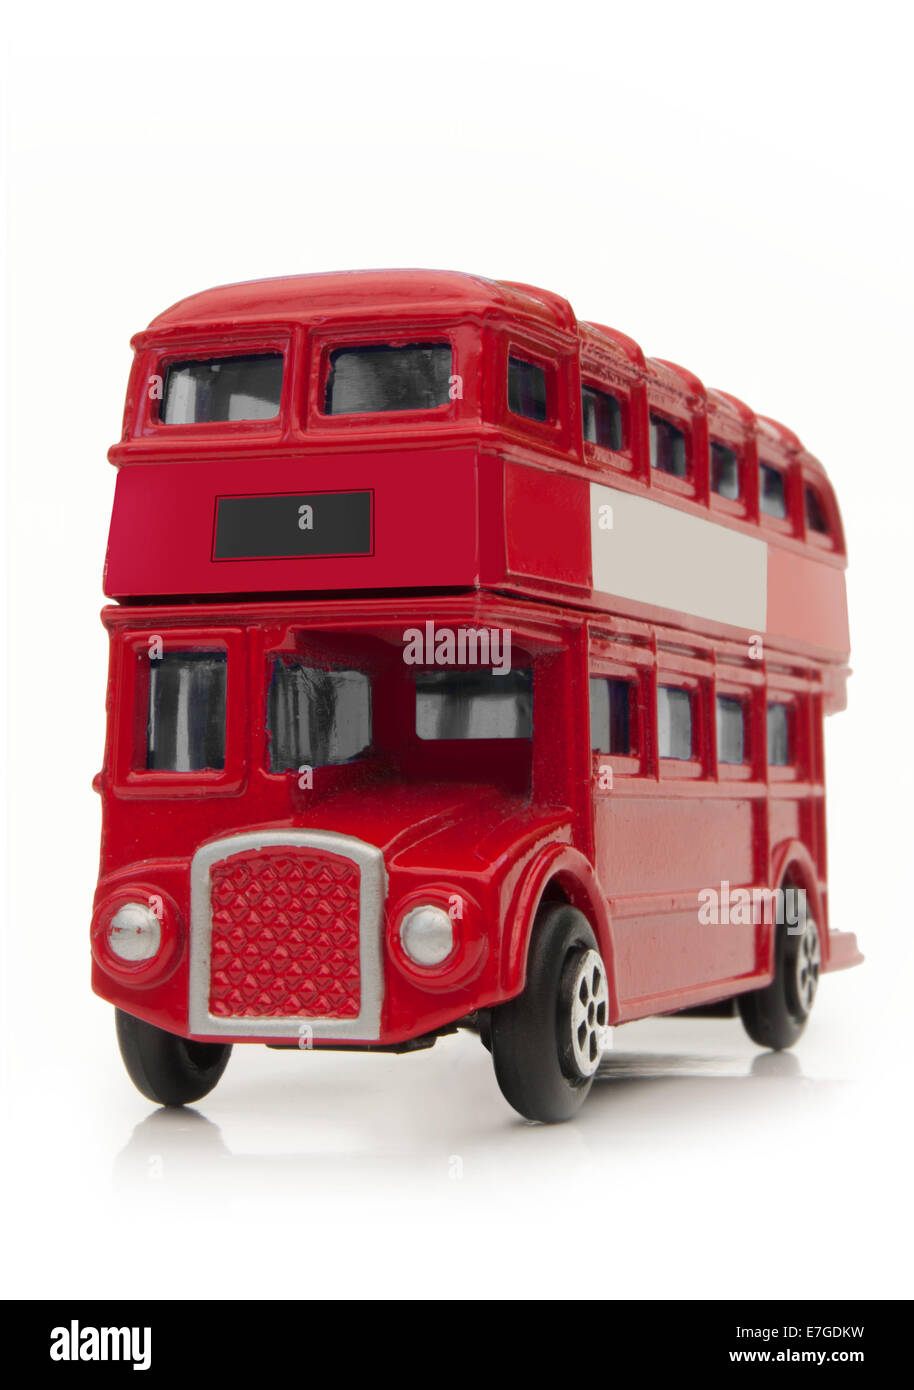 London bus à impériale routemaster rouge sur un fond blanc Banque D'Images